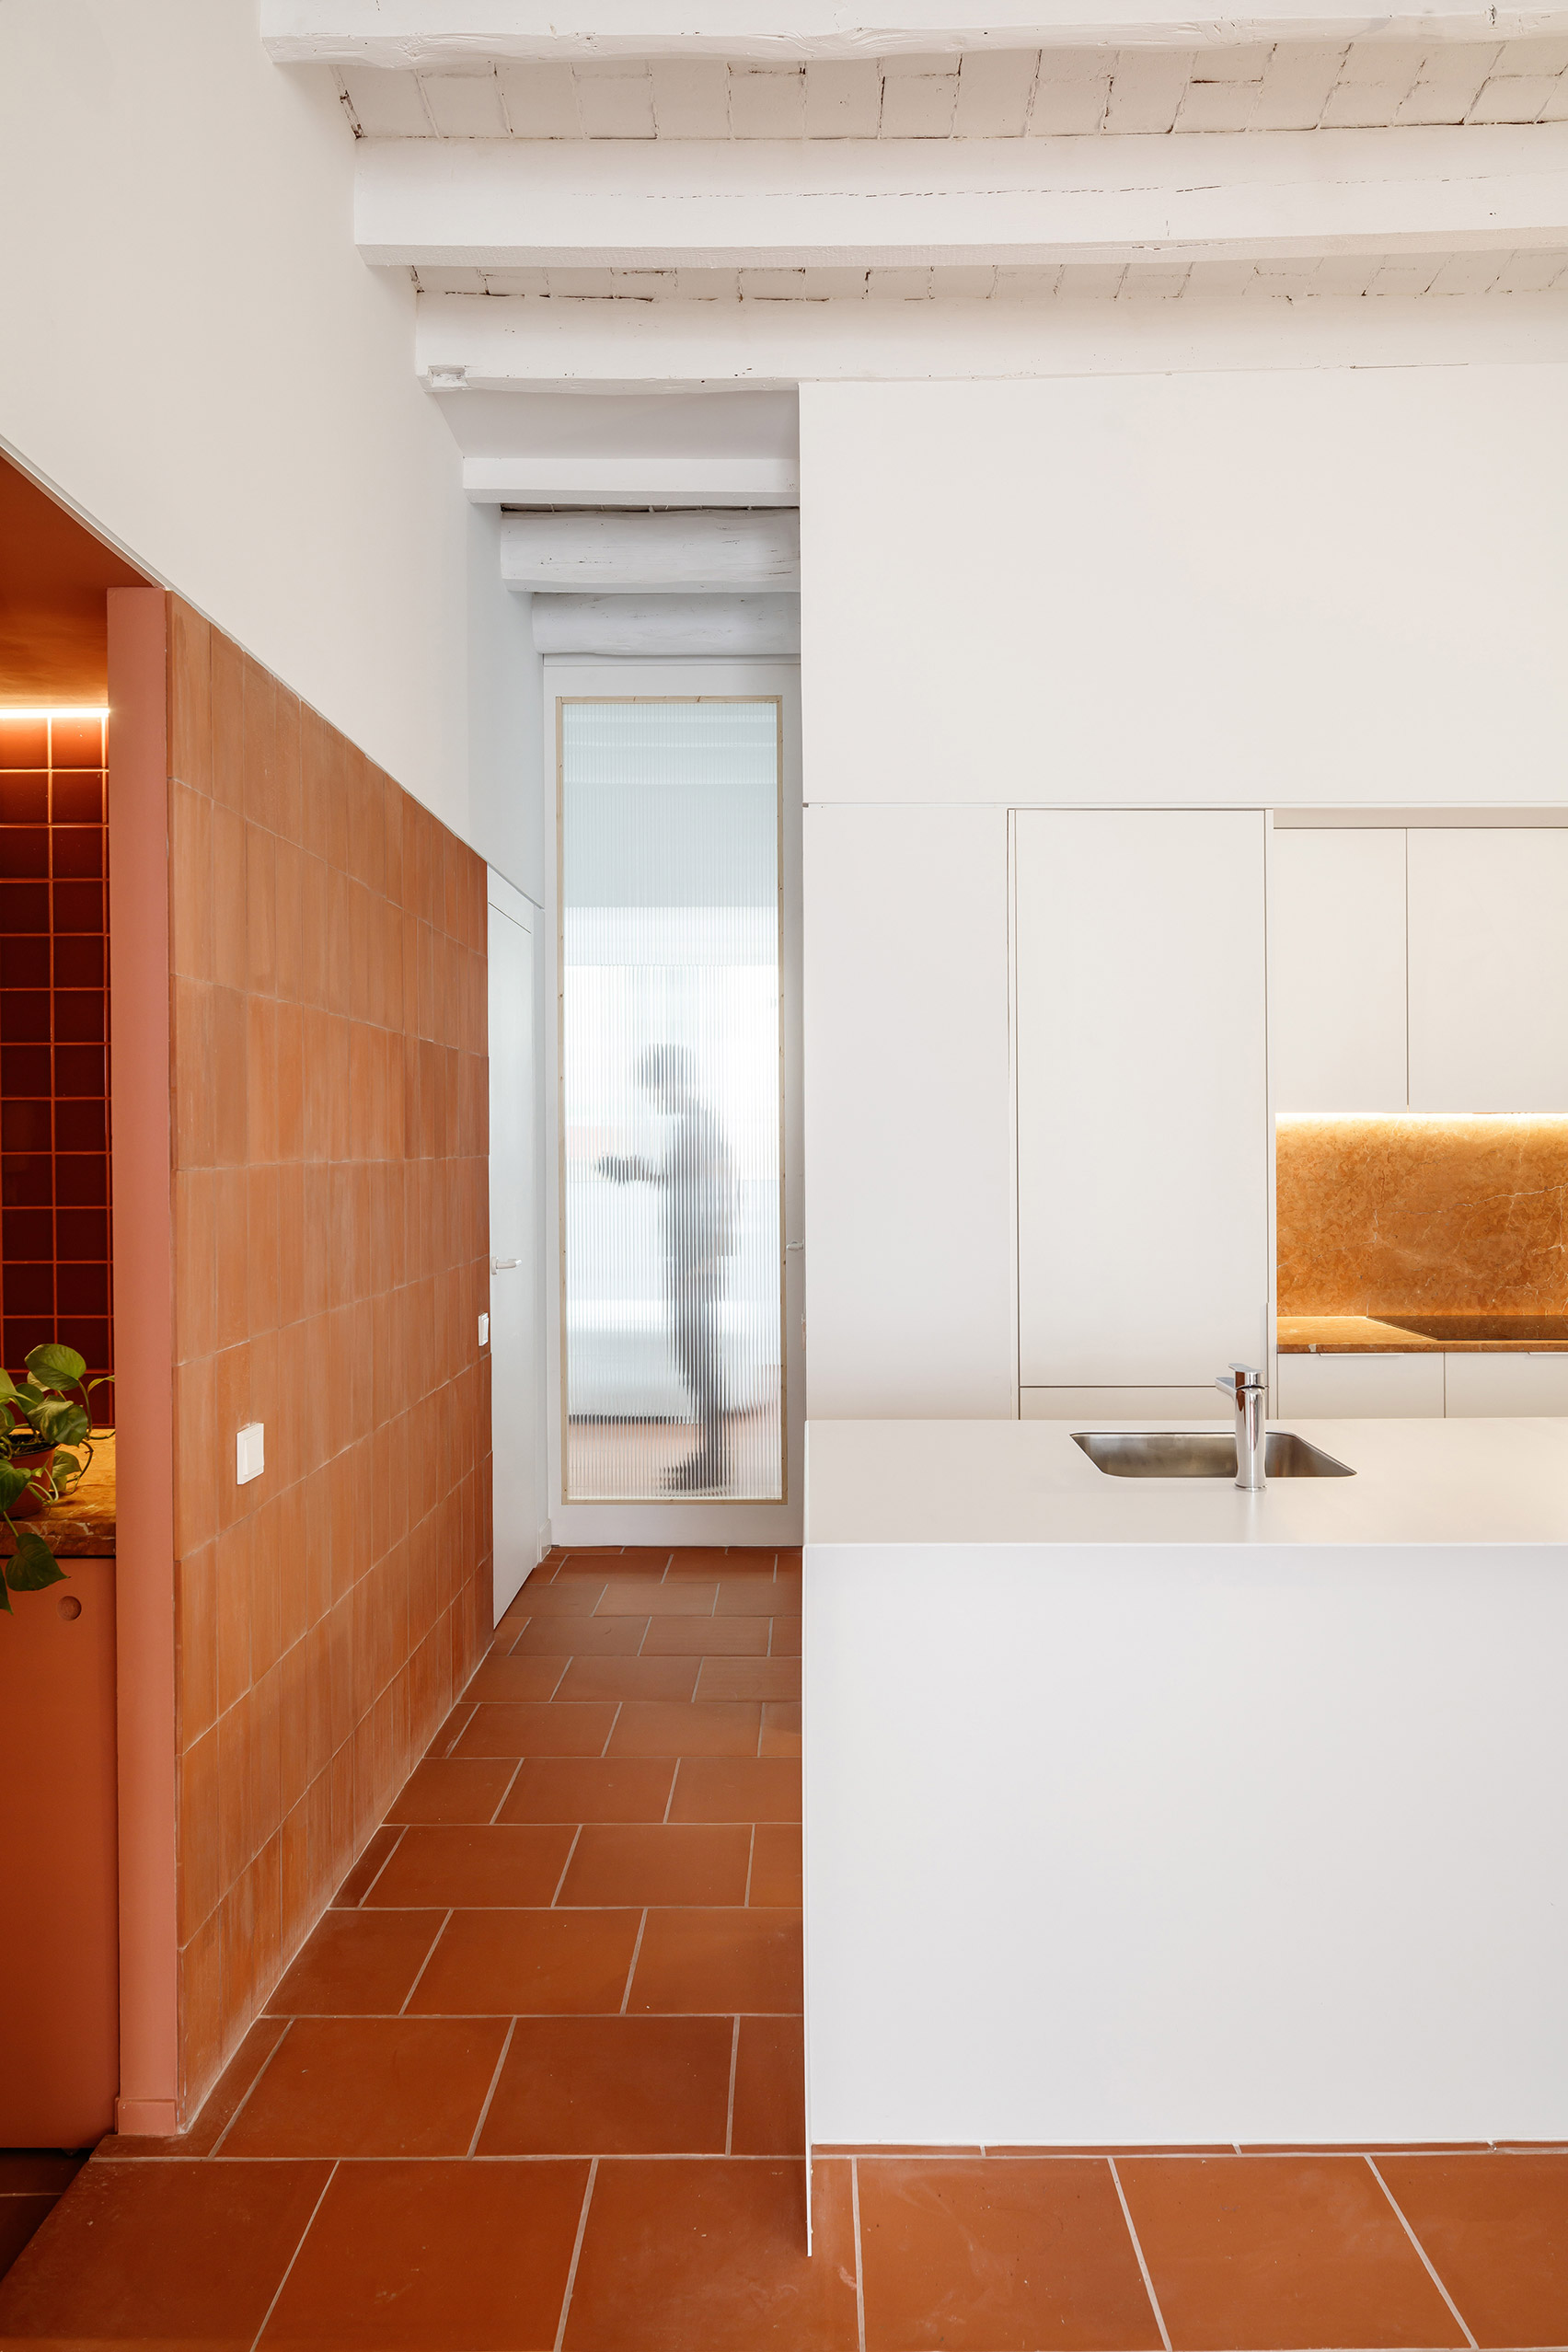 Less is more. Barcelona apartment La Odette, CRU architecture studio